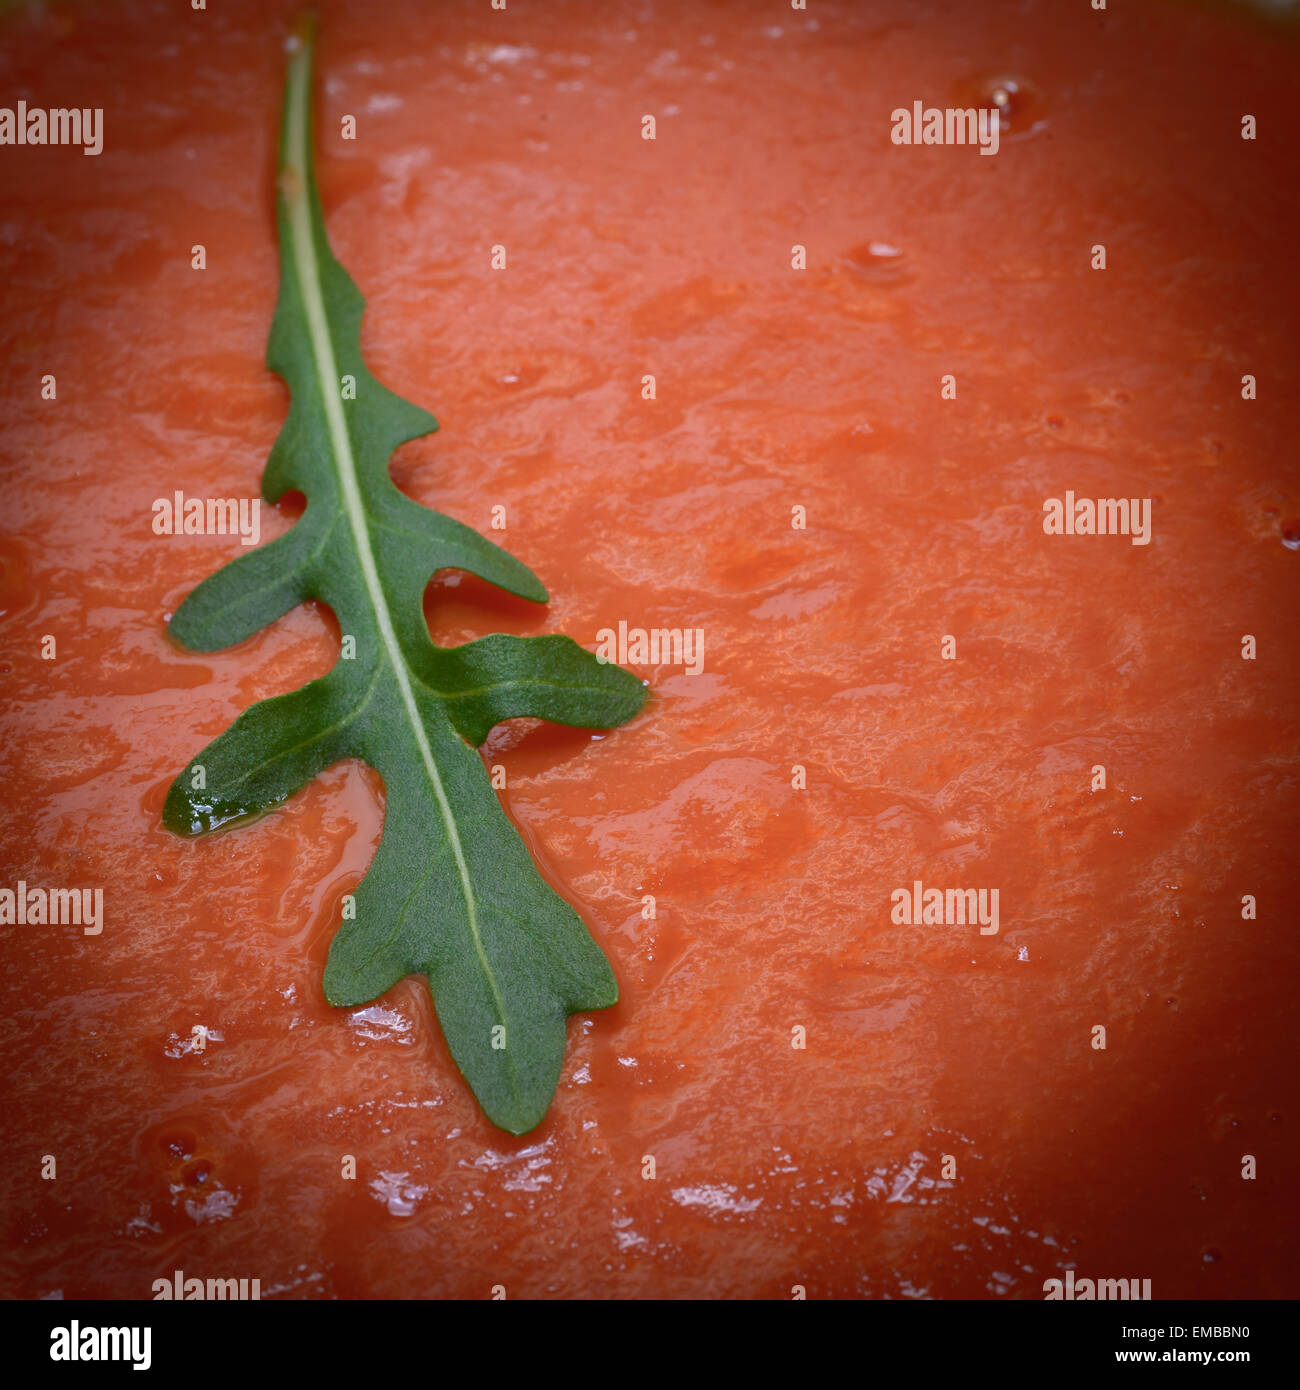 Rucola leaf sleeping on tomato souce Stock Photo